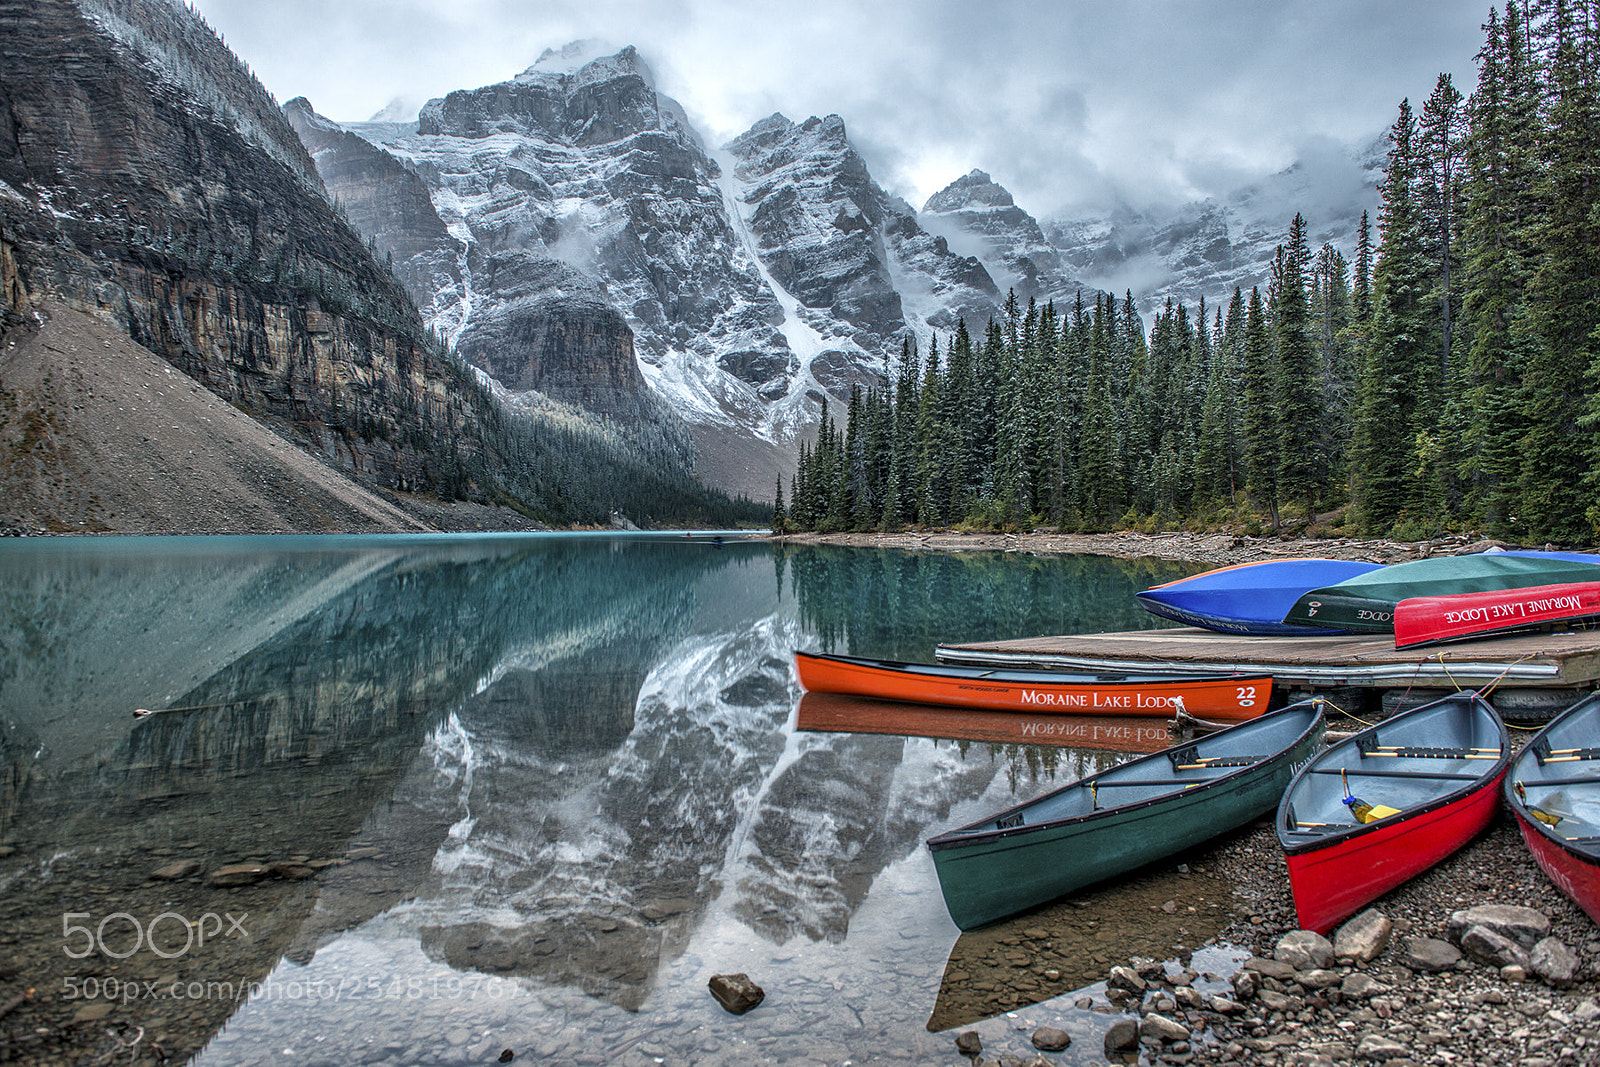 Nikon D800E sample photo. Moraine lake canoes photography